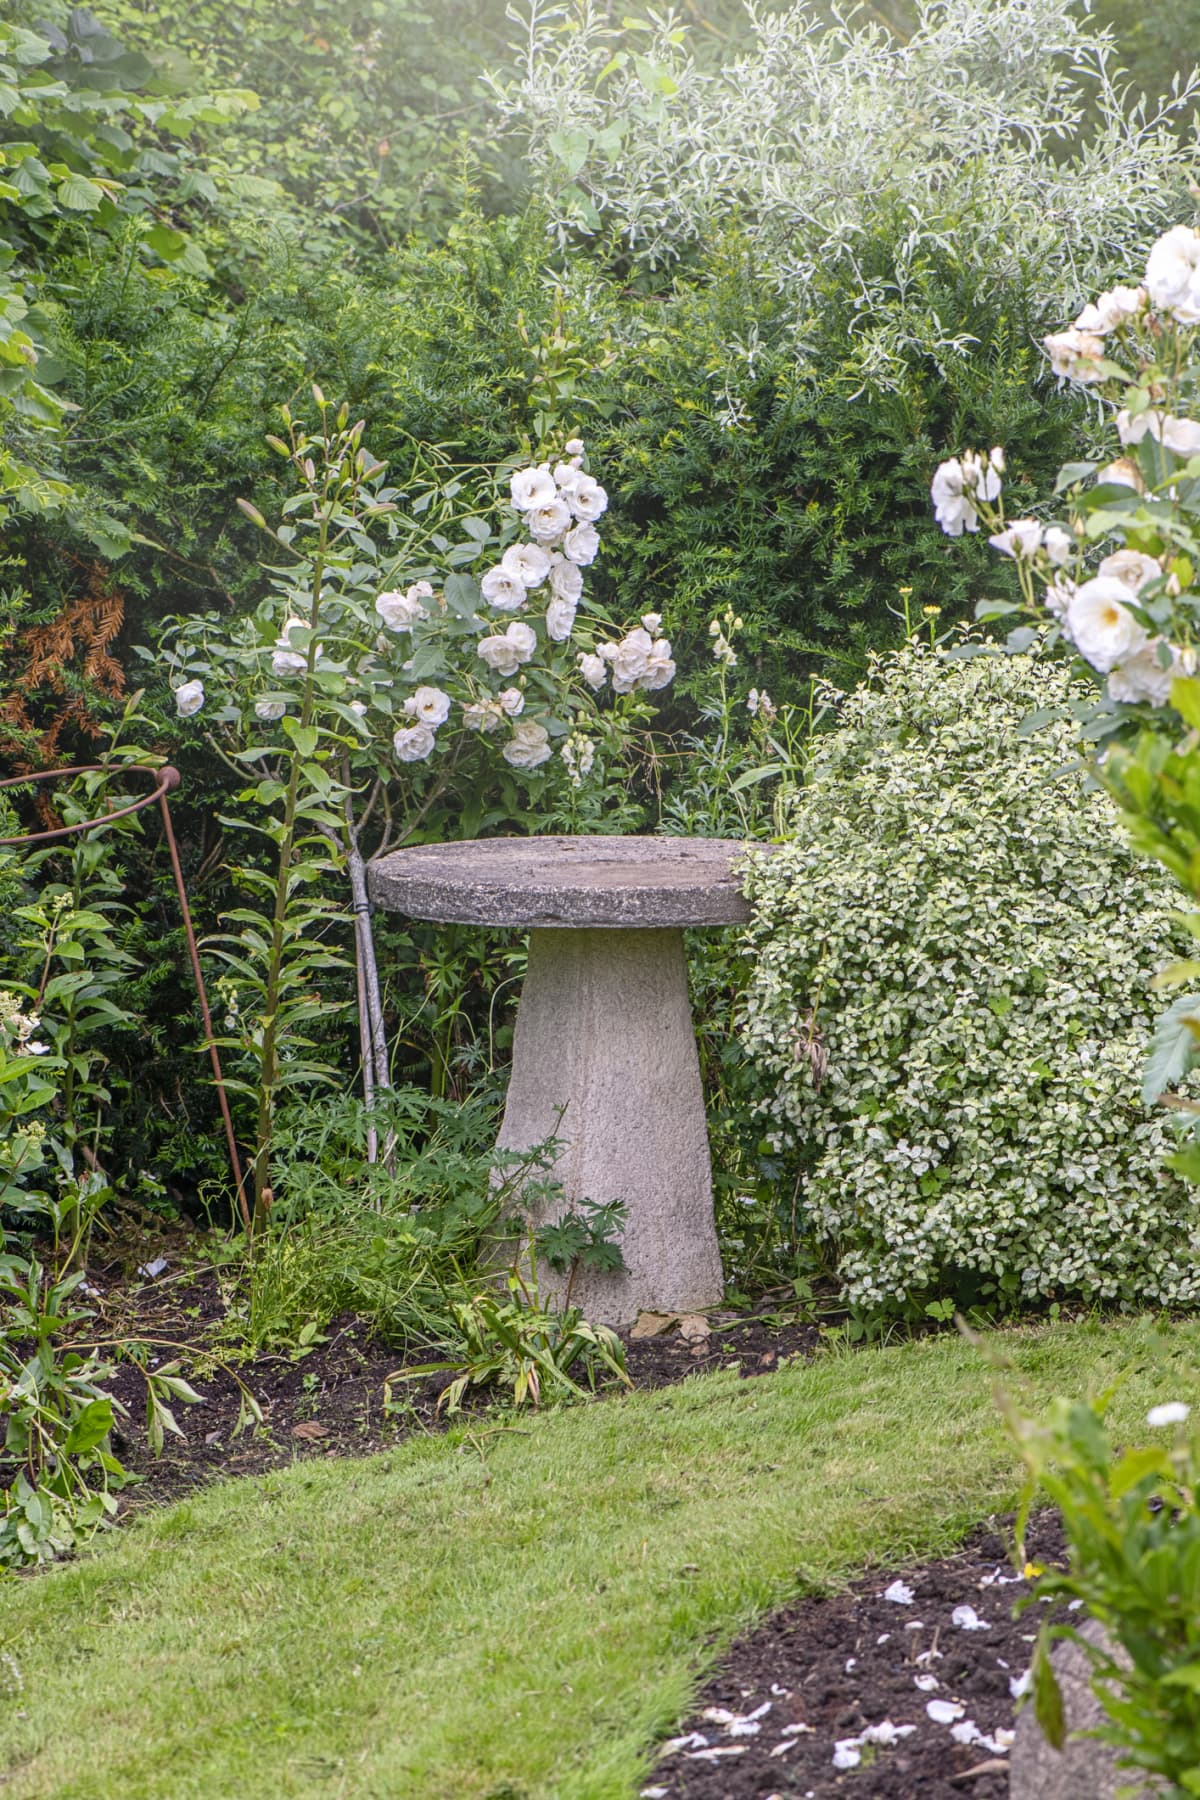 Stone birdbath in garden